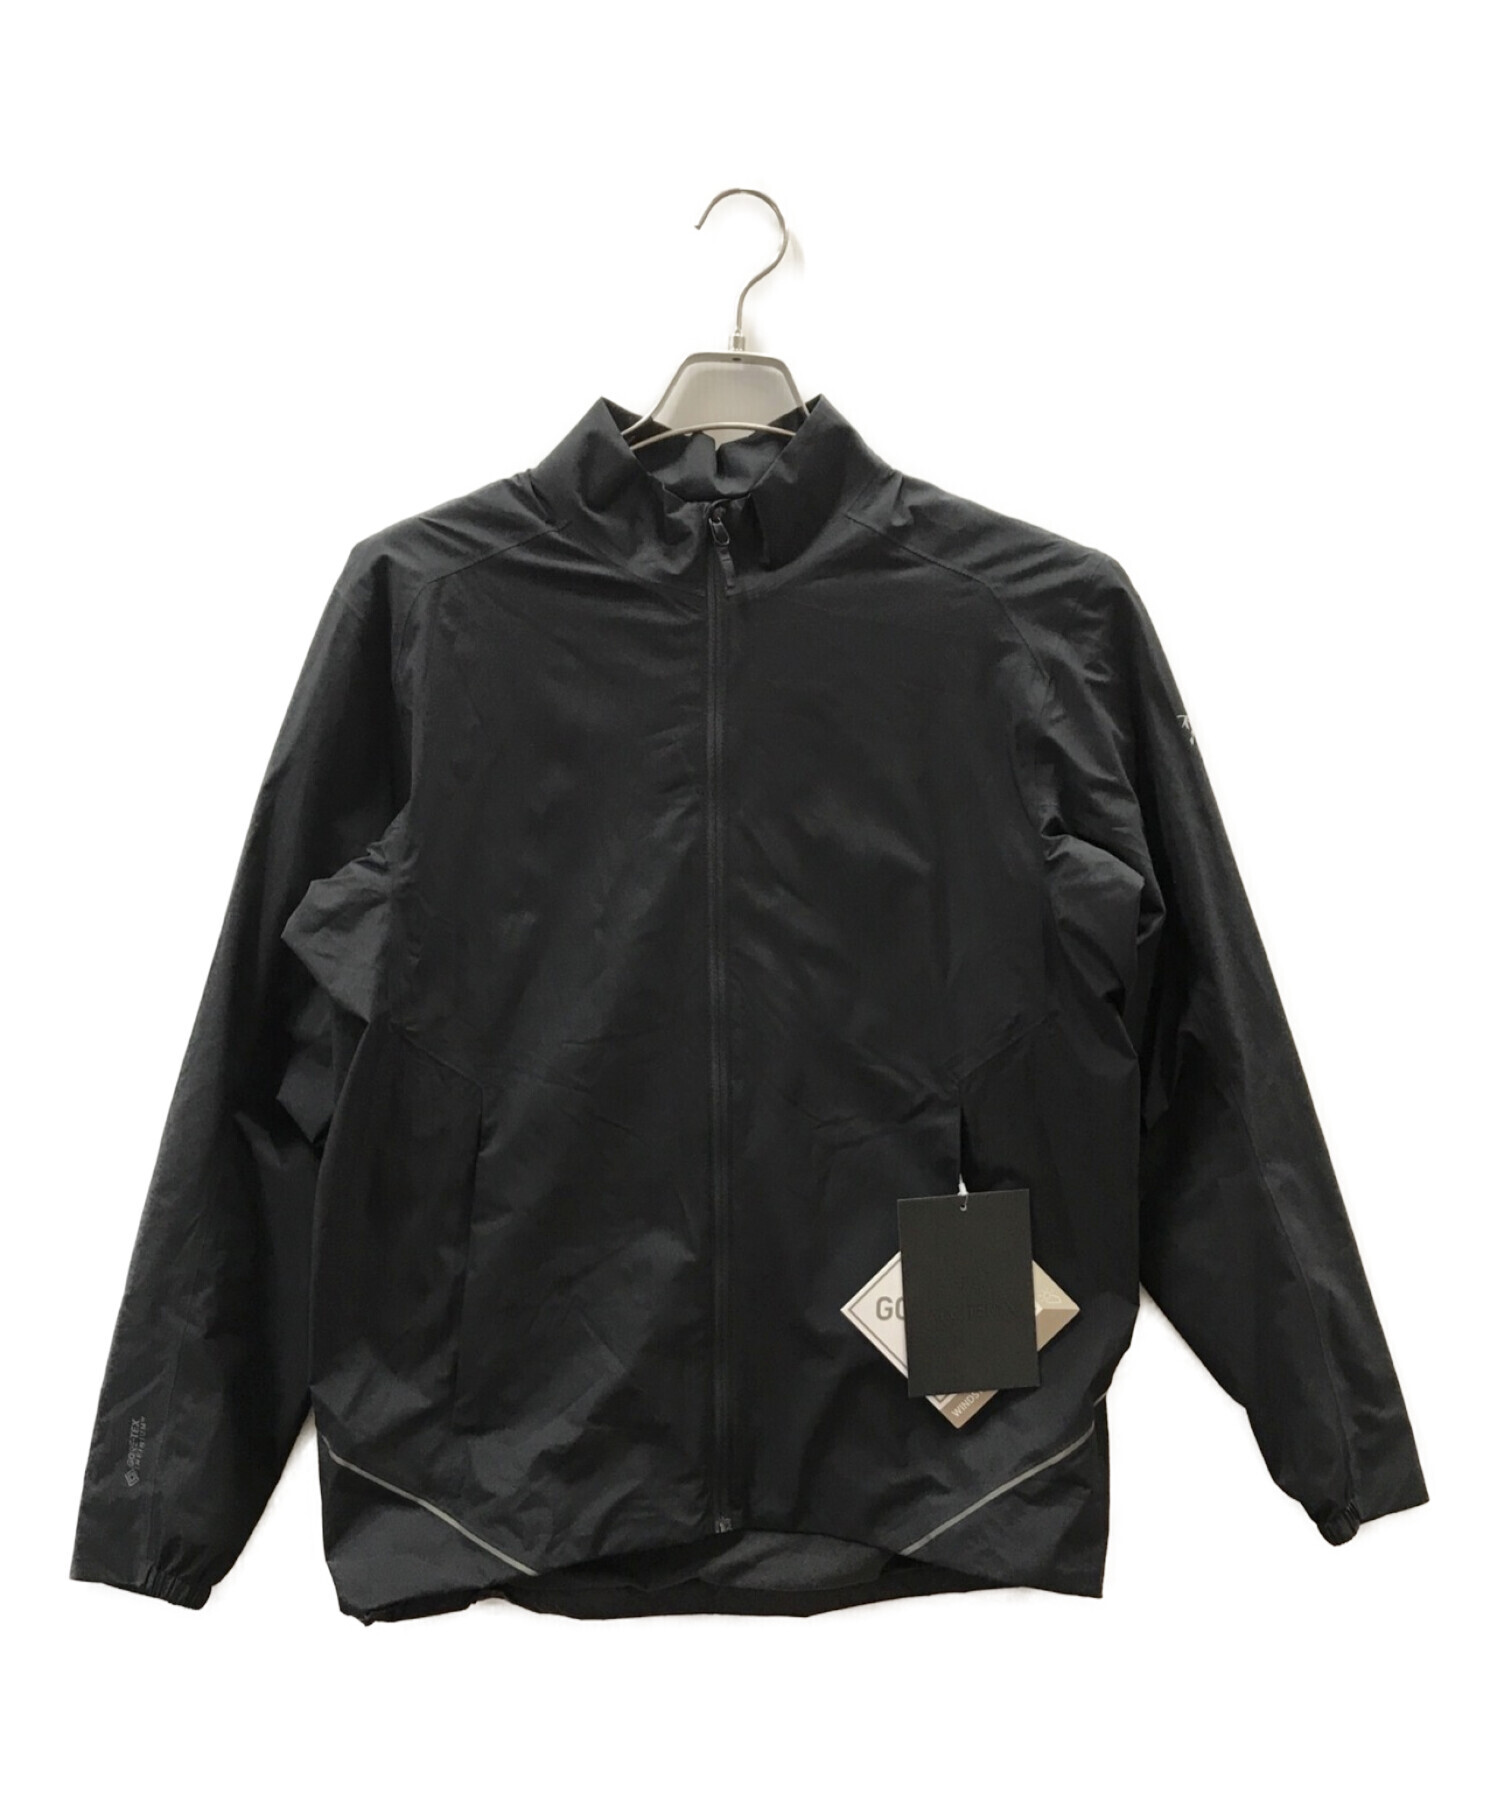 ARC'TERYX (アークテリクス) Solano Jacket ブラック サイズ:M 未使用品